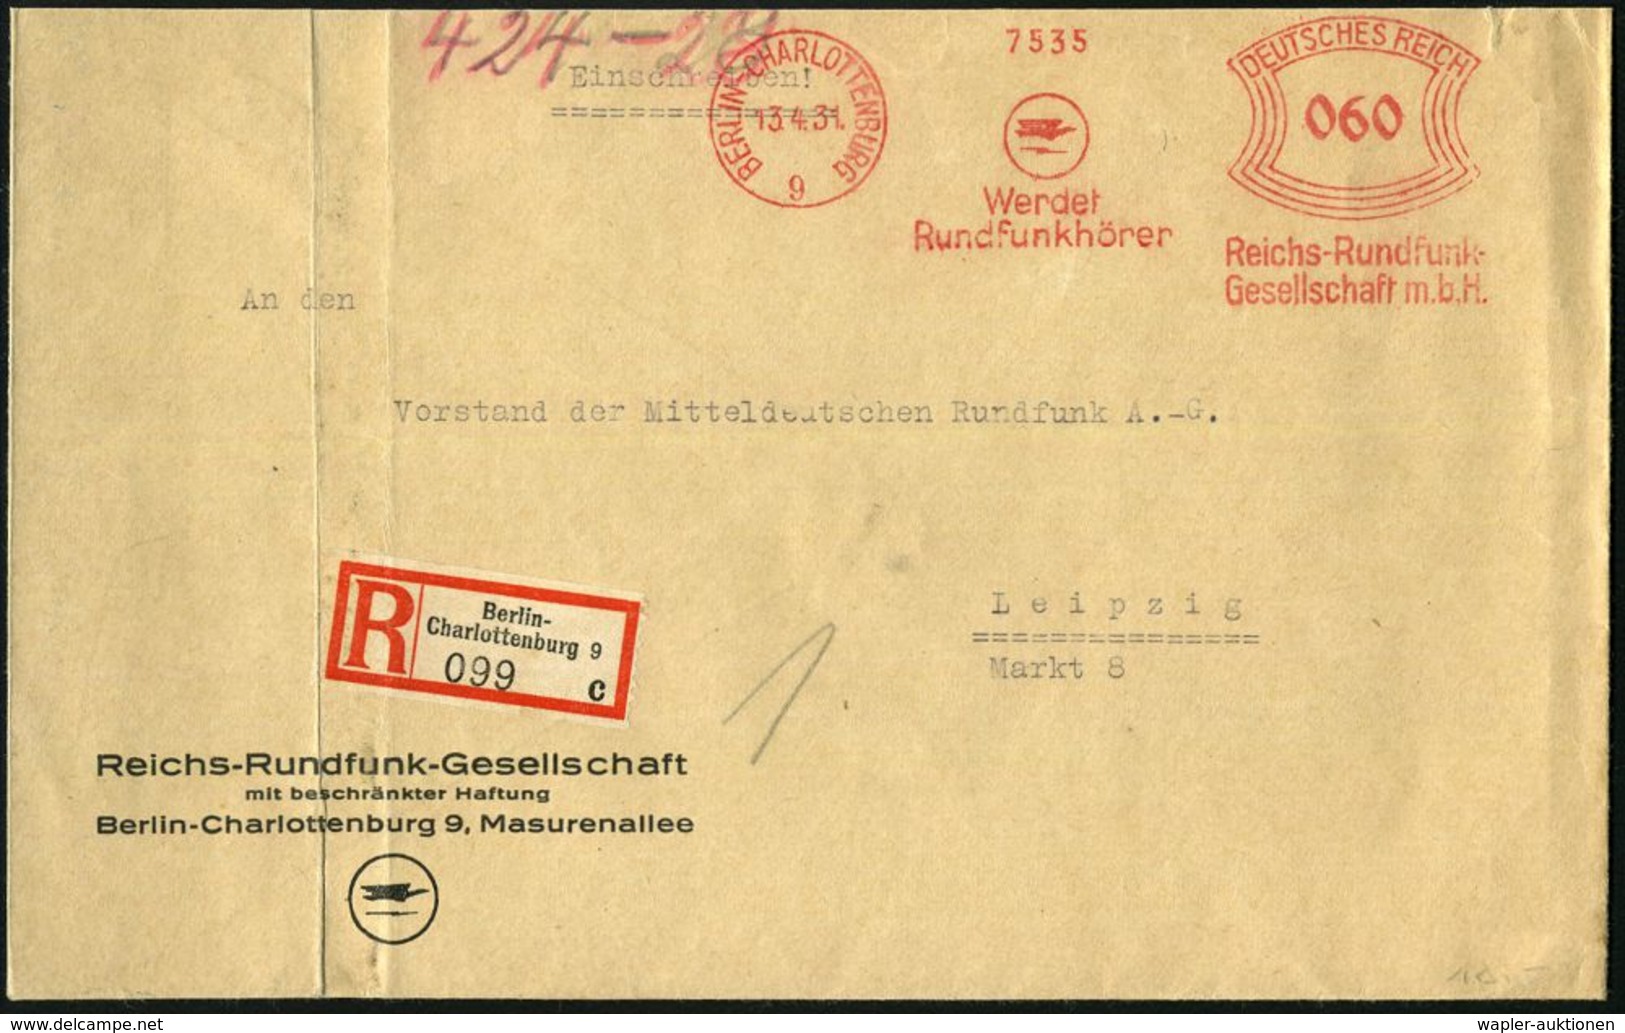 BERLIN-CHARLOTTENBURG/ 9/ Werdet/ Rundfunkhörer/ Reichs-Rundfunk-/ GmbH 1931 (13.4.) AFS 060 Pf. (Logo) Auf Motivgl. Vor - Non Classificati